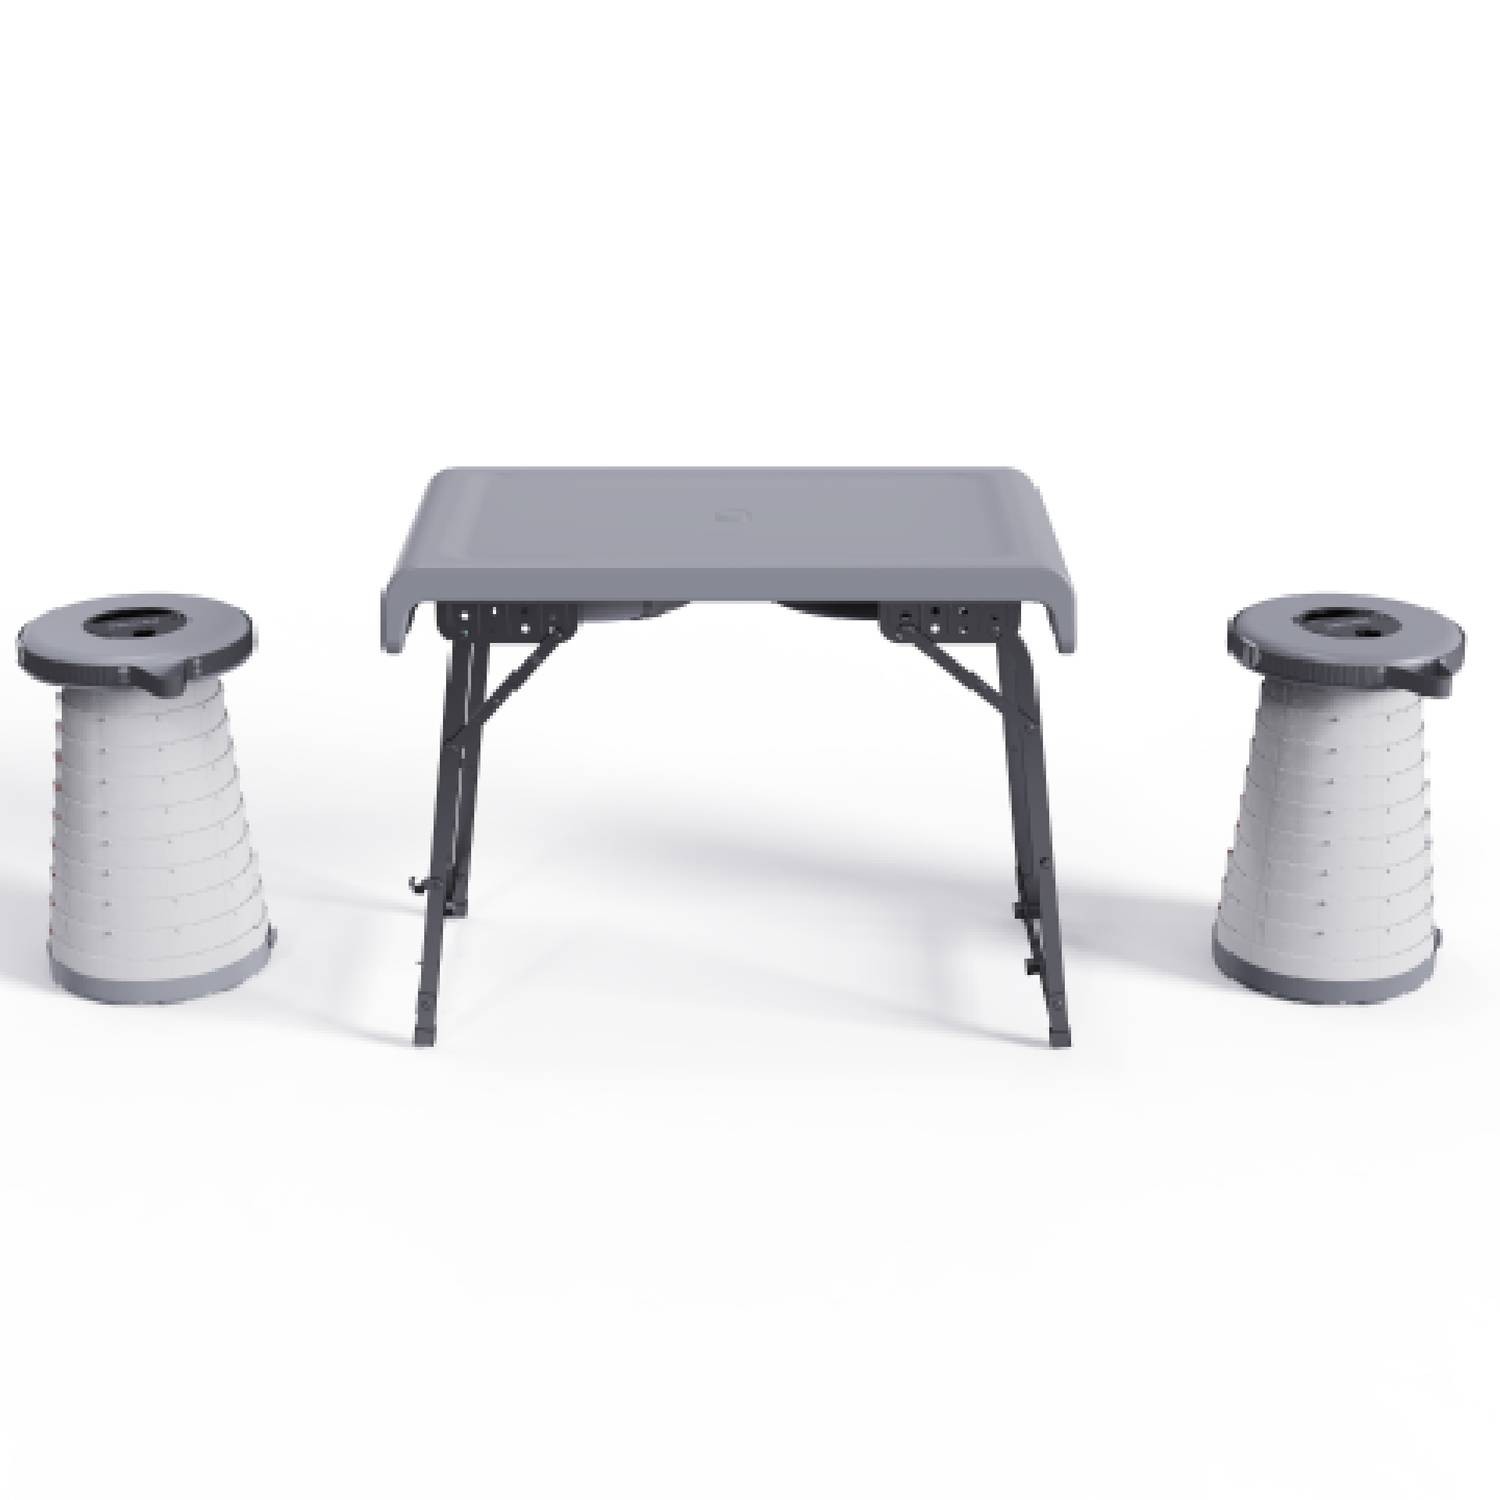 Porodo Compact Portable Outdoor Table Set